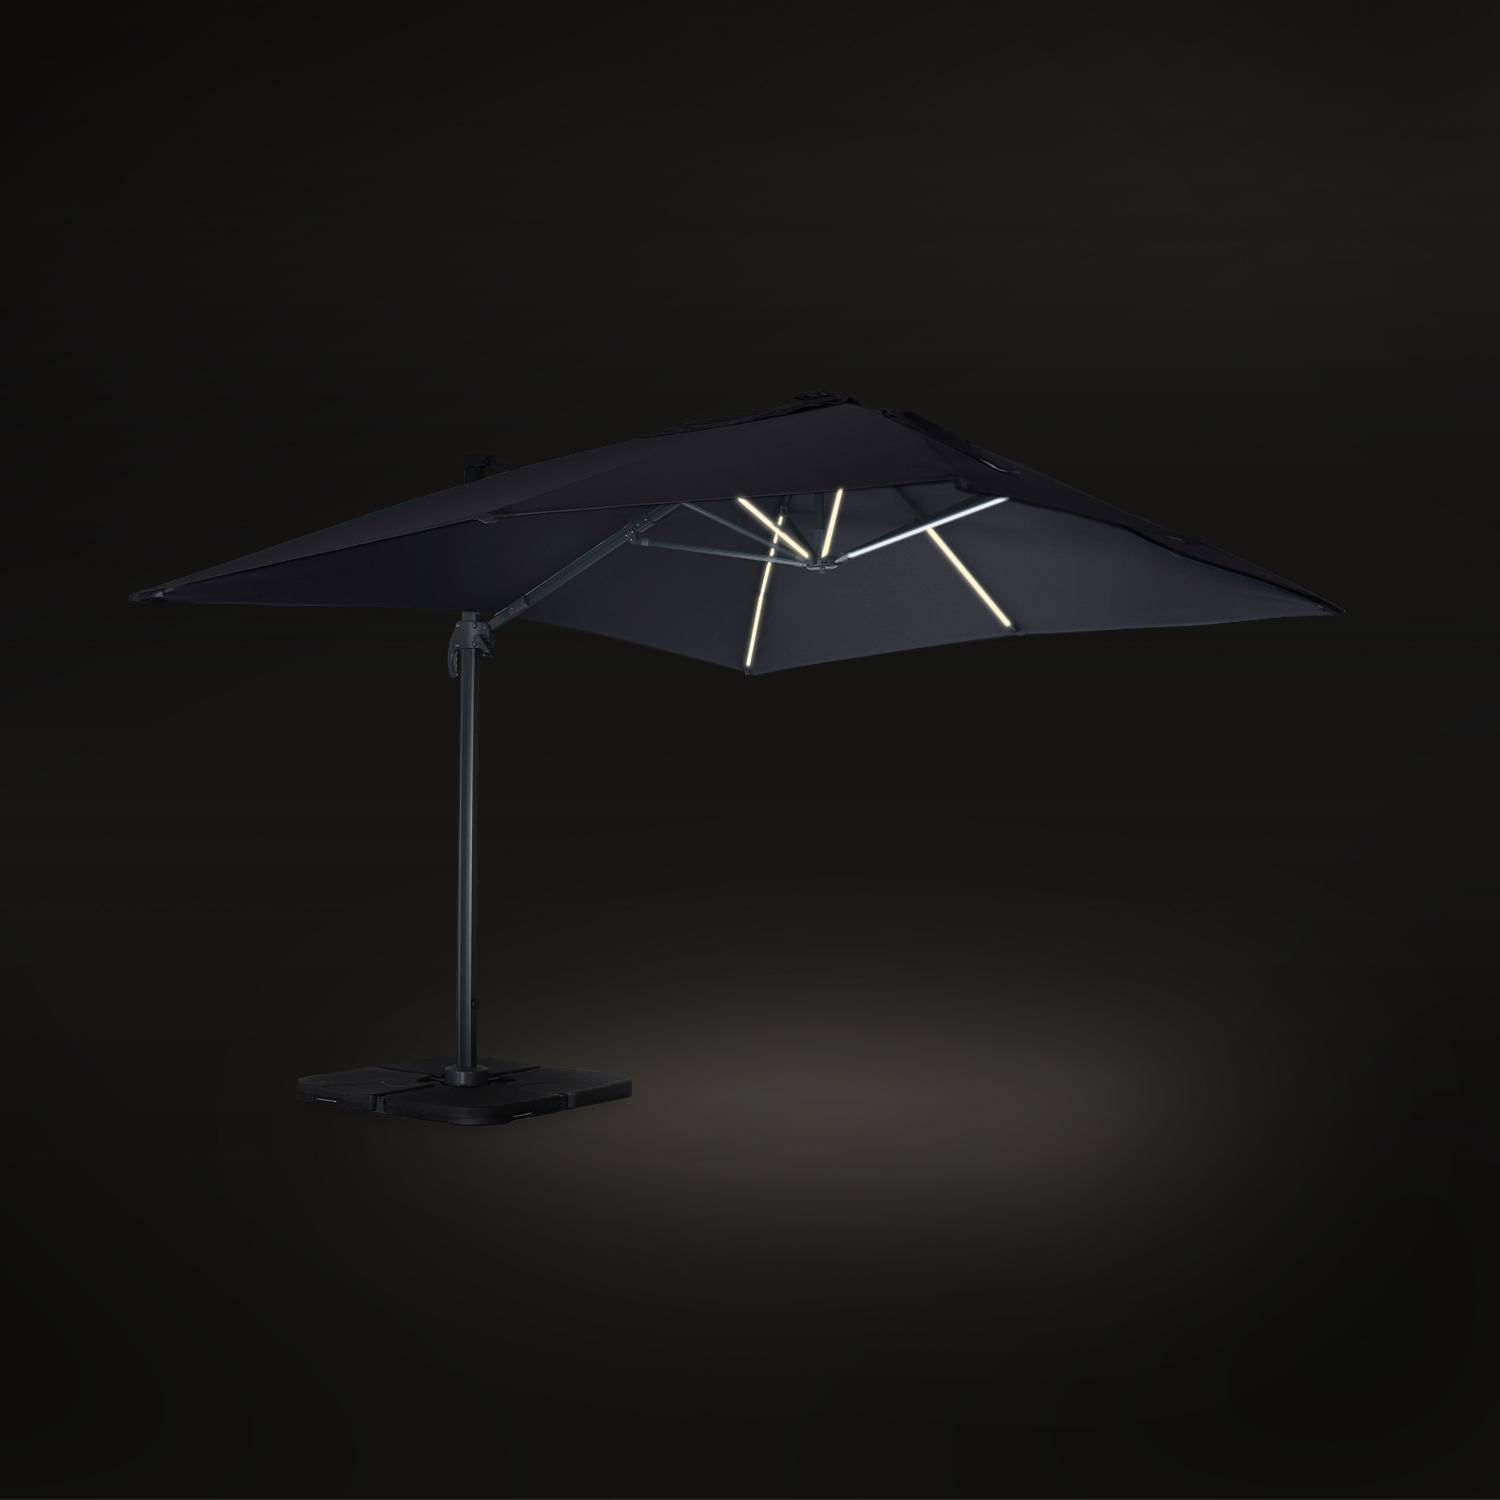 Luce, parasol déporté haut de gamme 3x4m Photo5